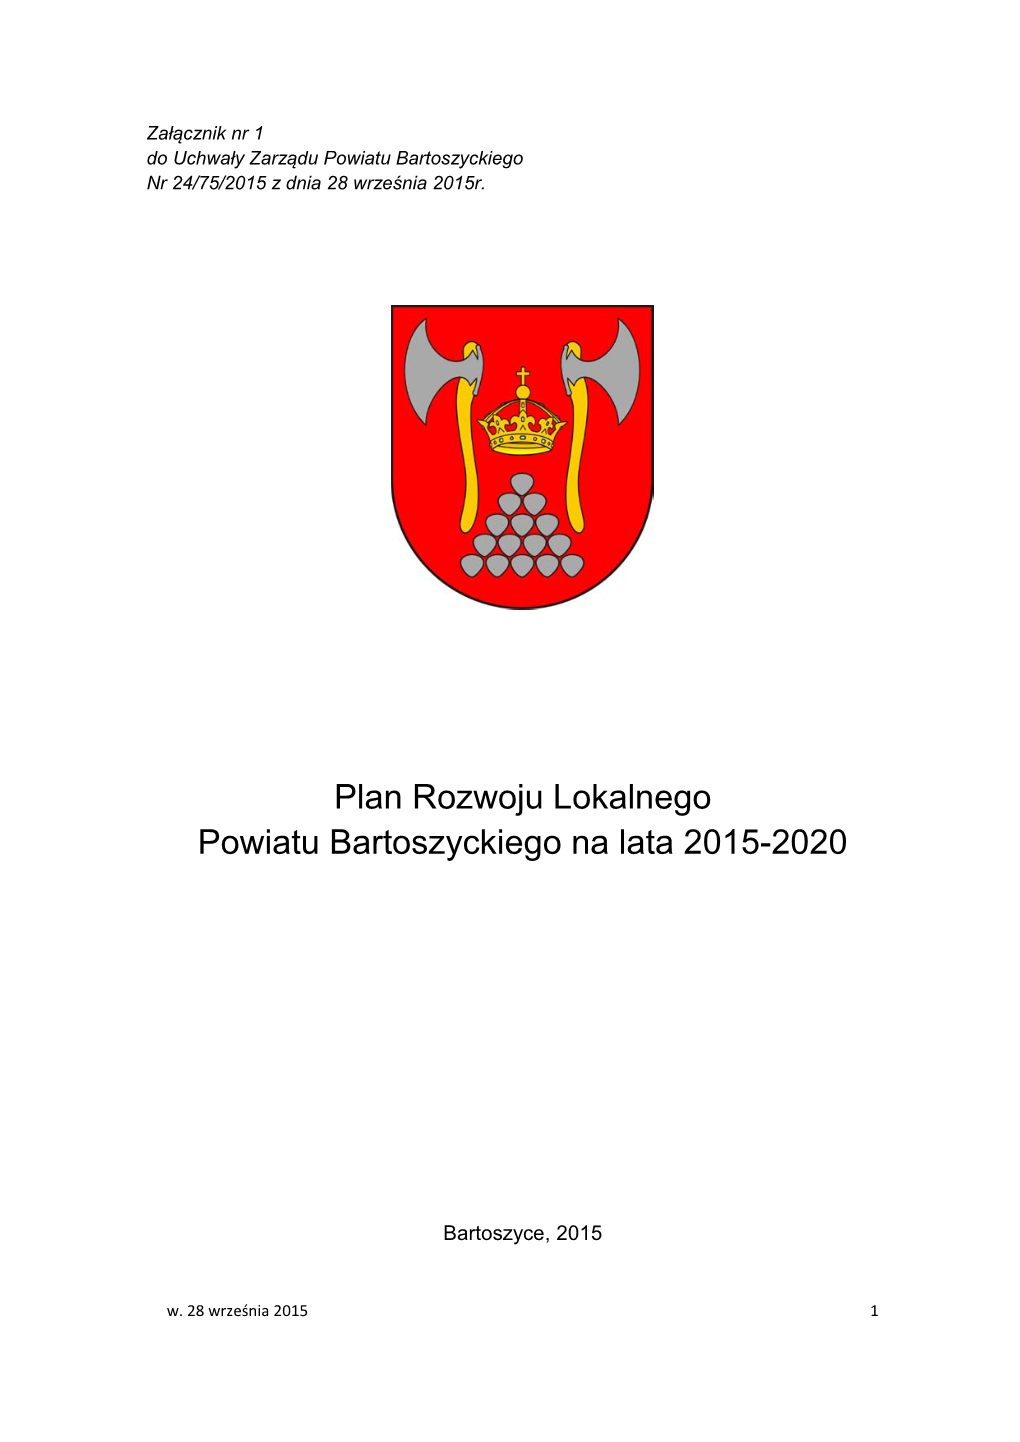 Plan Rozwoju Lokalnego Powiatu Bartoszyckiego Na Lata 2015-2020